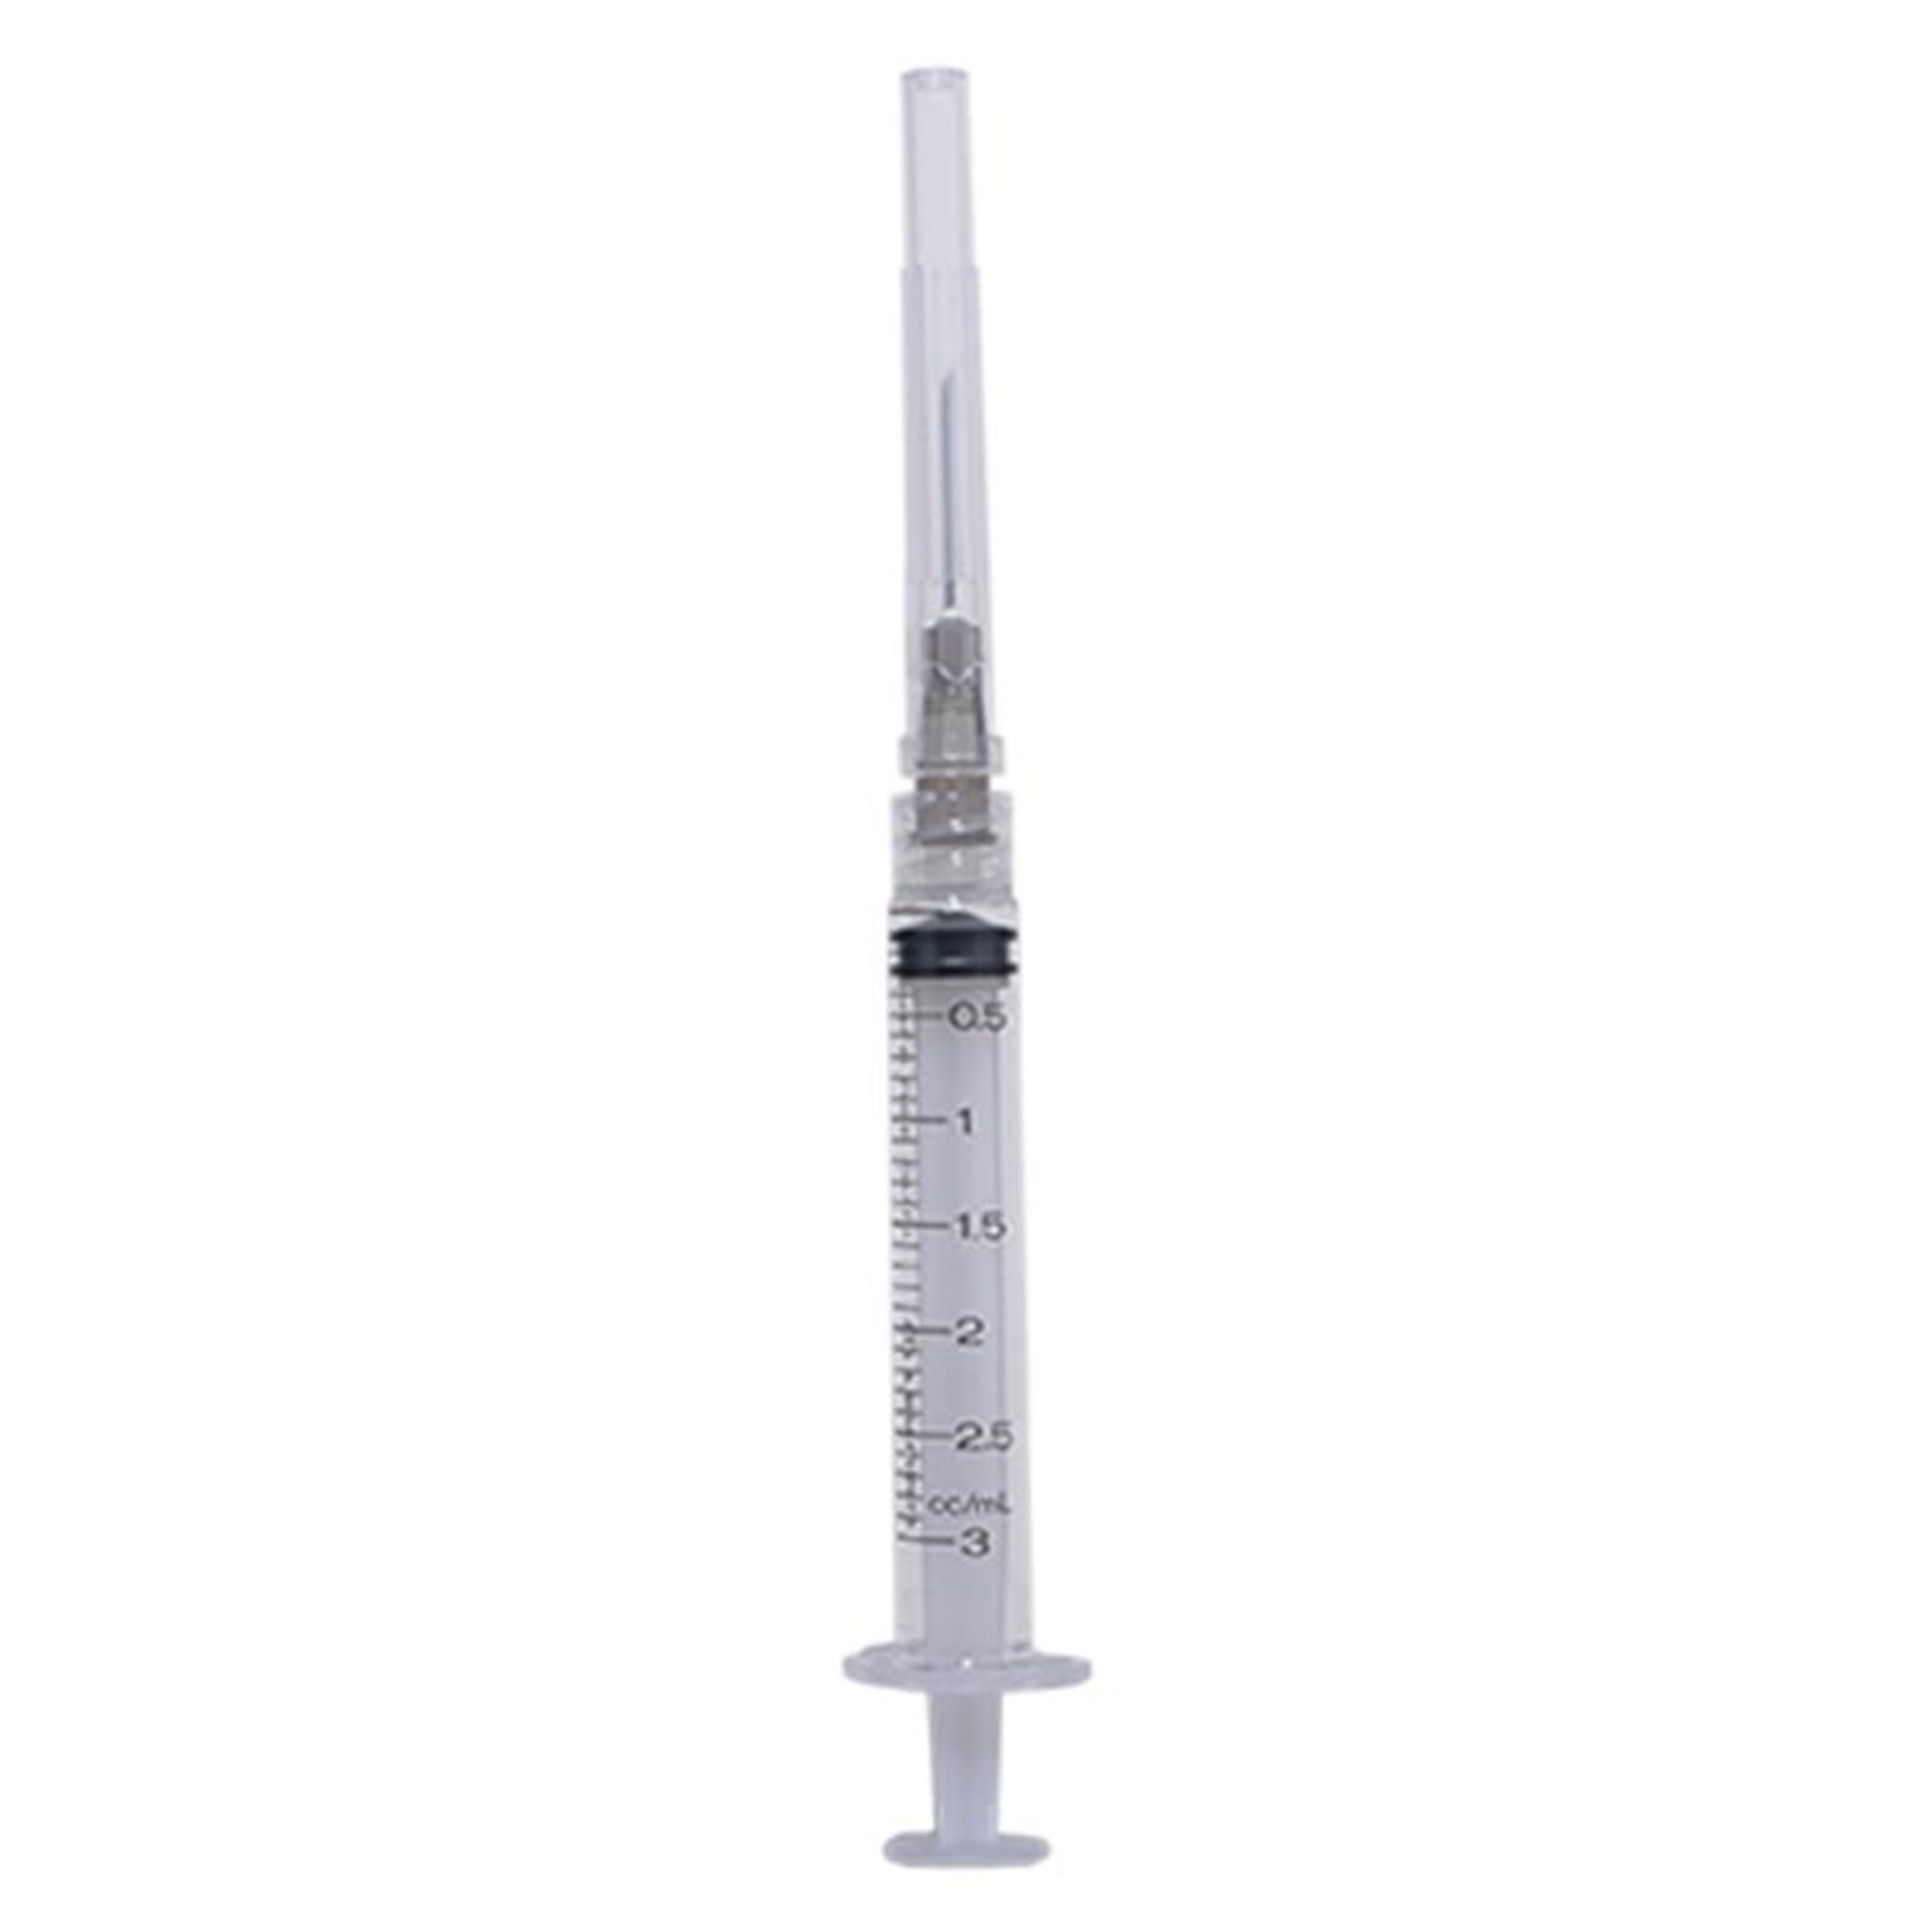 Disposable Syringe 3 ml 22g Needle (Luer Lock)